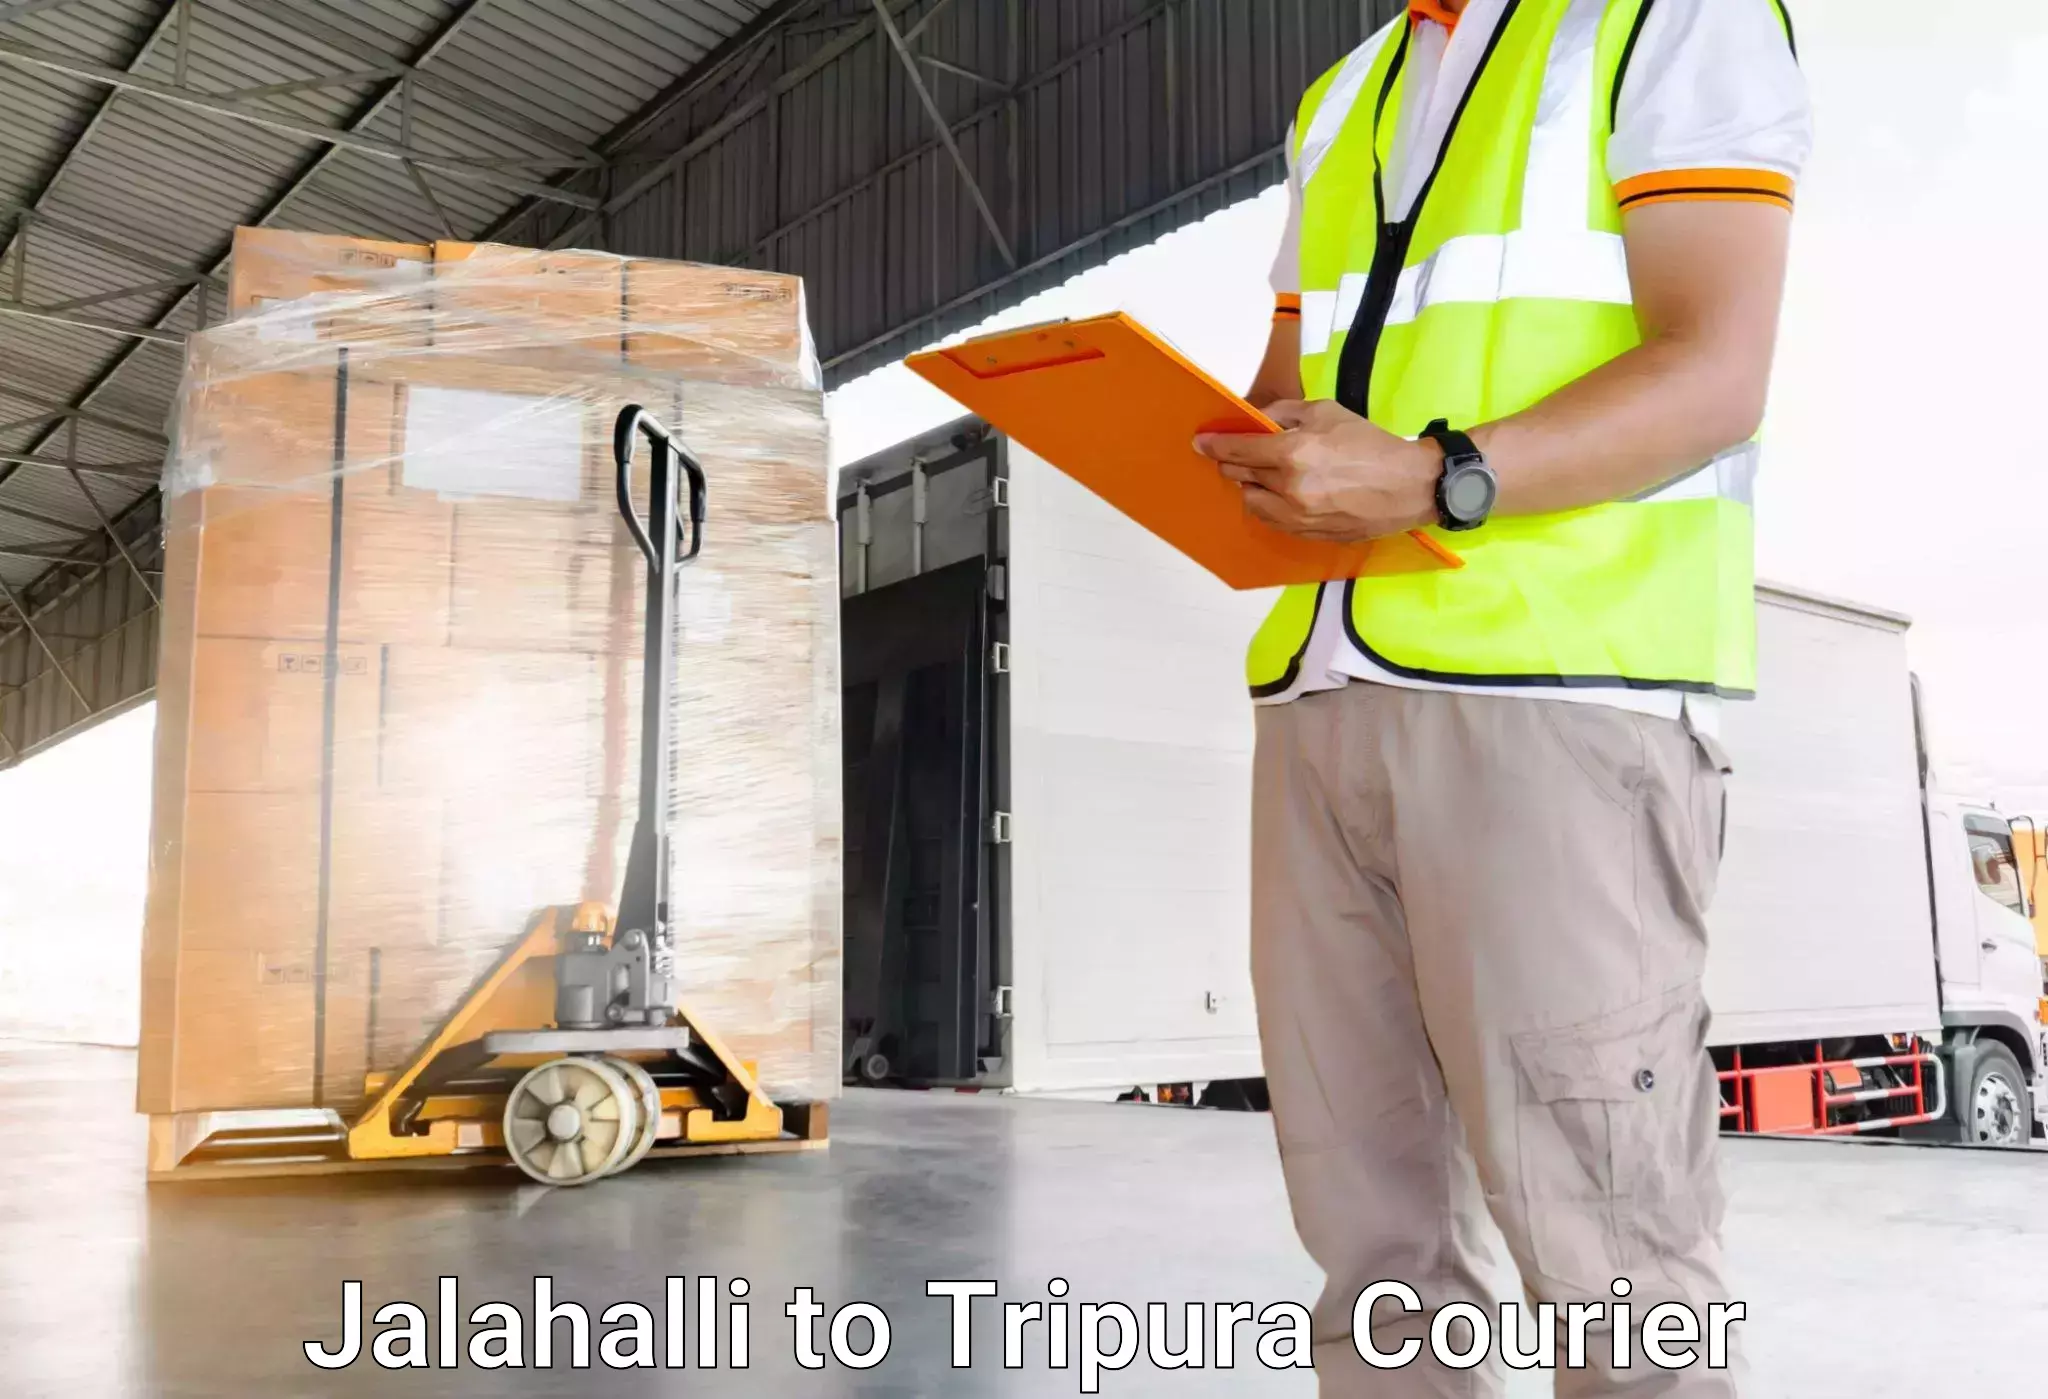 Luggage transit service in Jalahalli to Udaipur Tripura